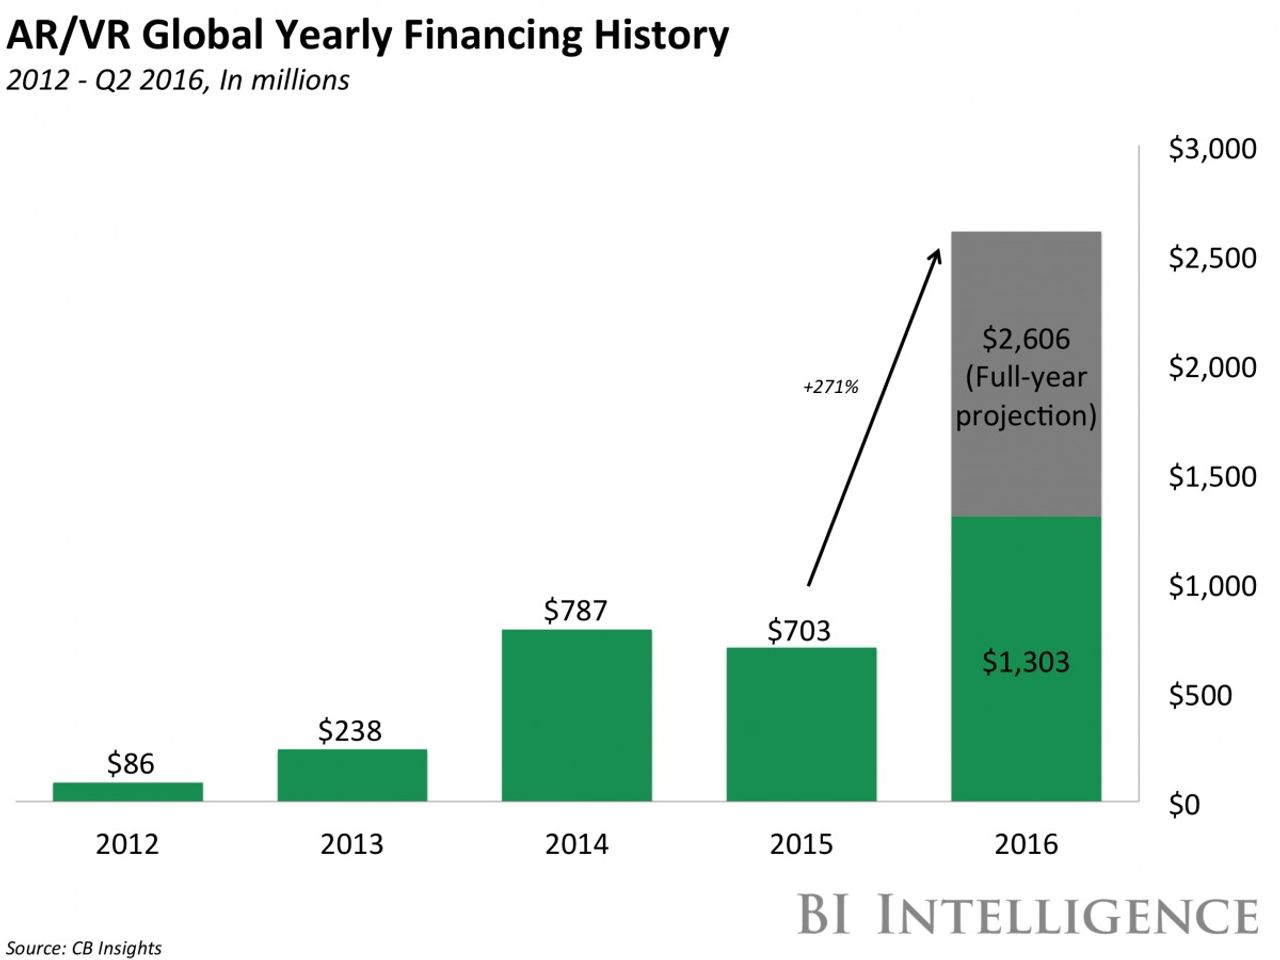 AR/VRへの融資の歴史を表したグラフ